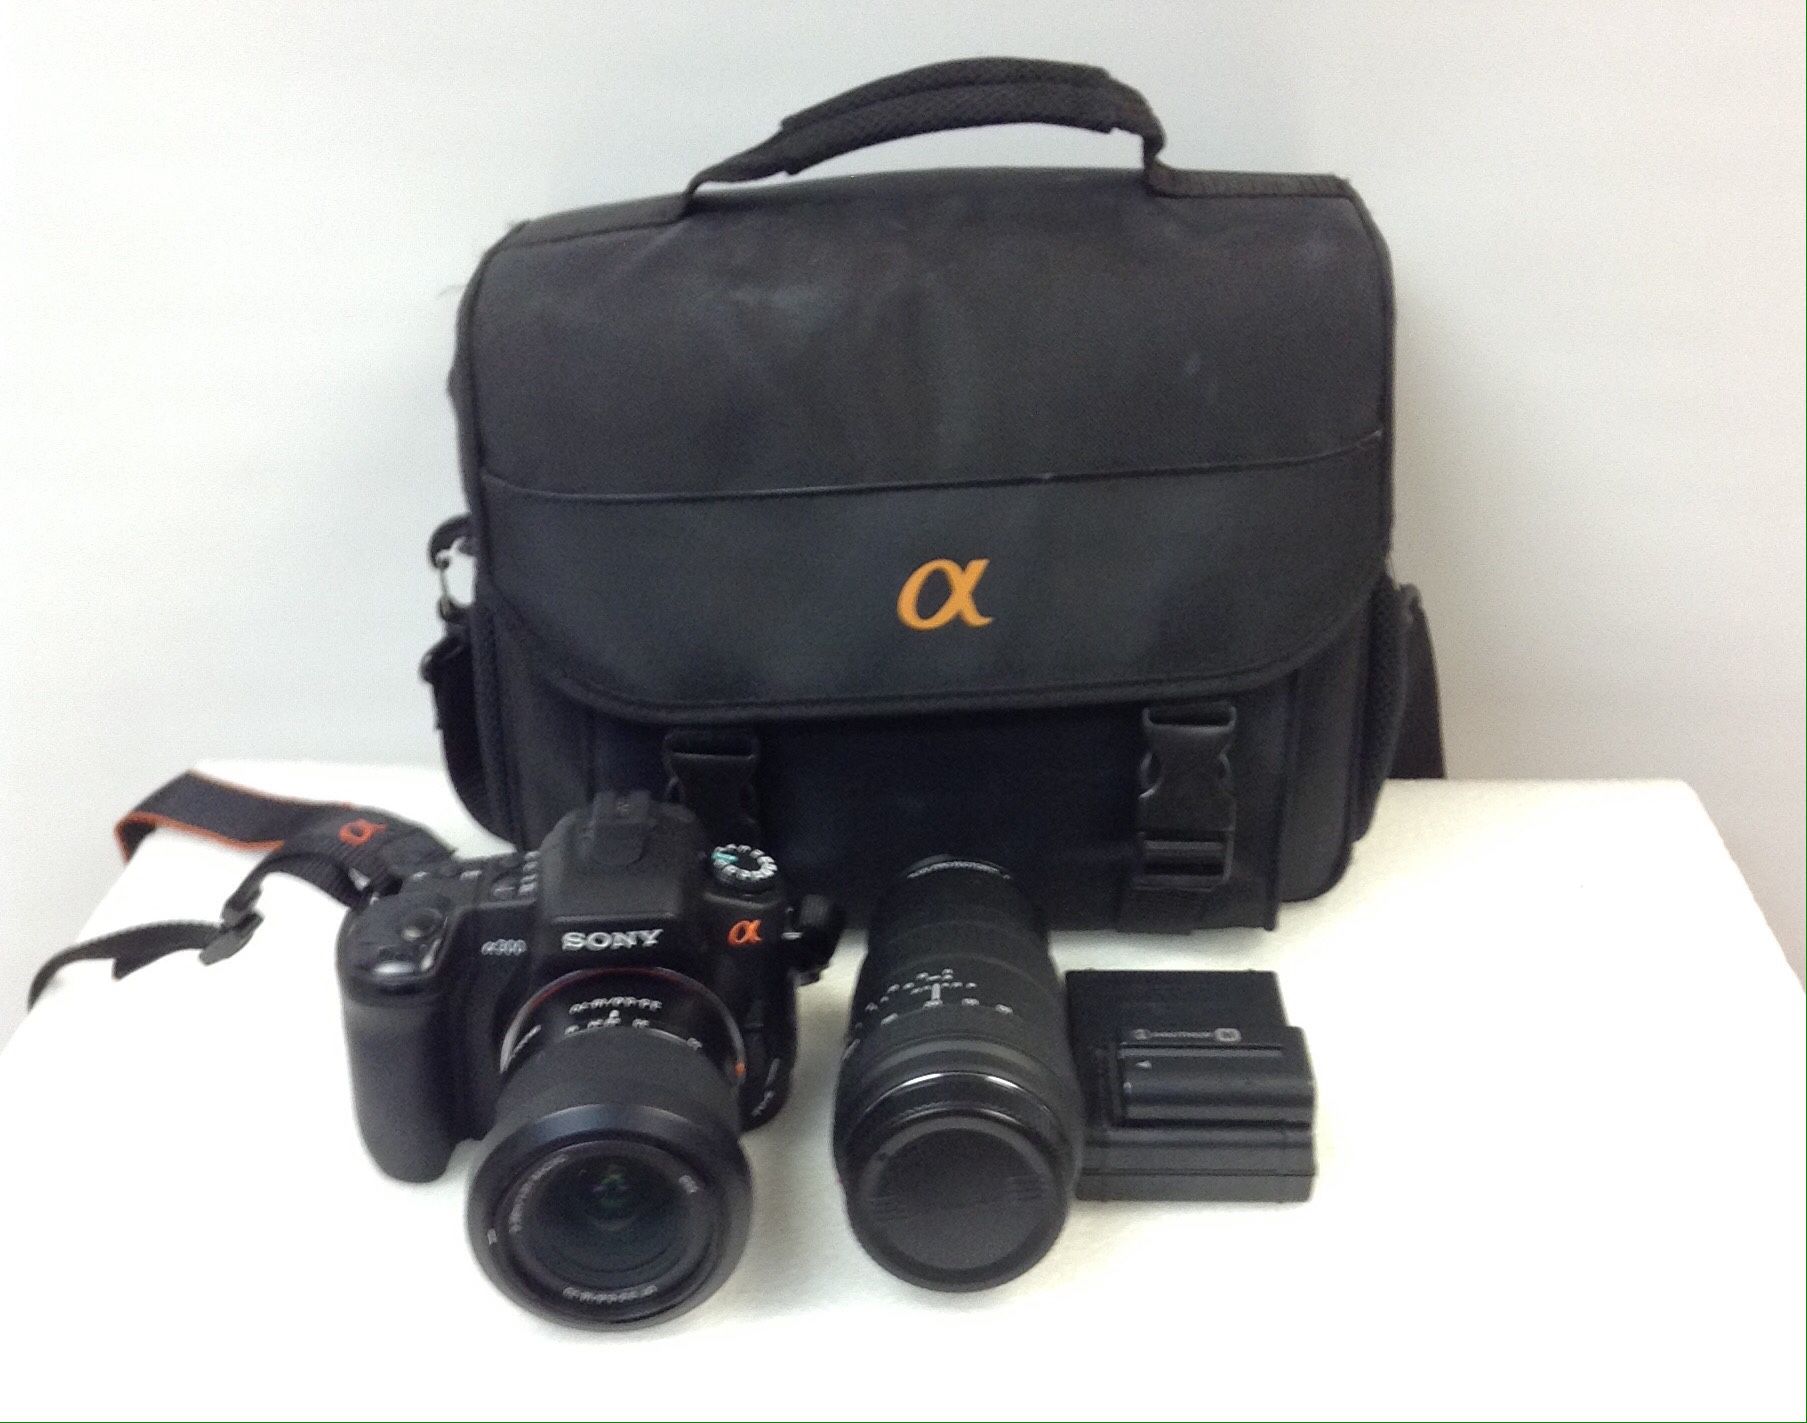 Sony Alpha a300 SLR camera kit